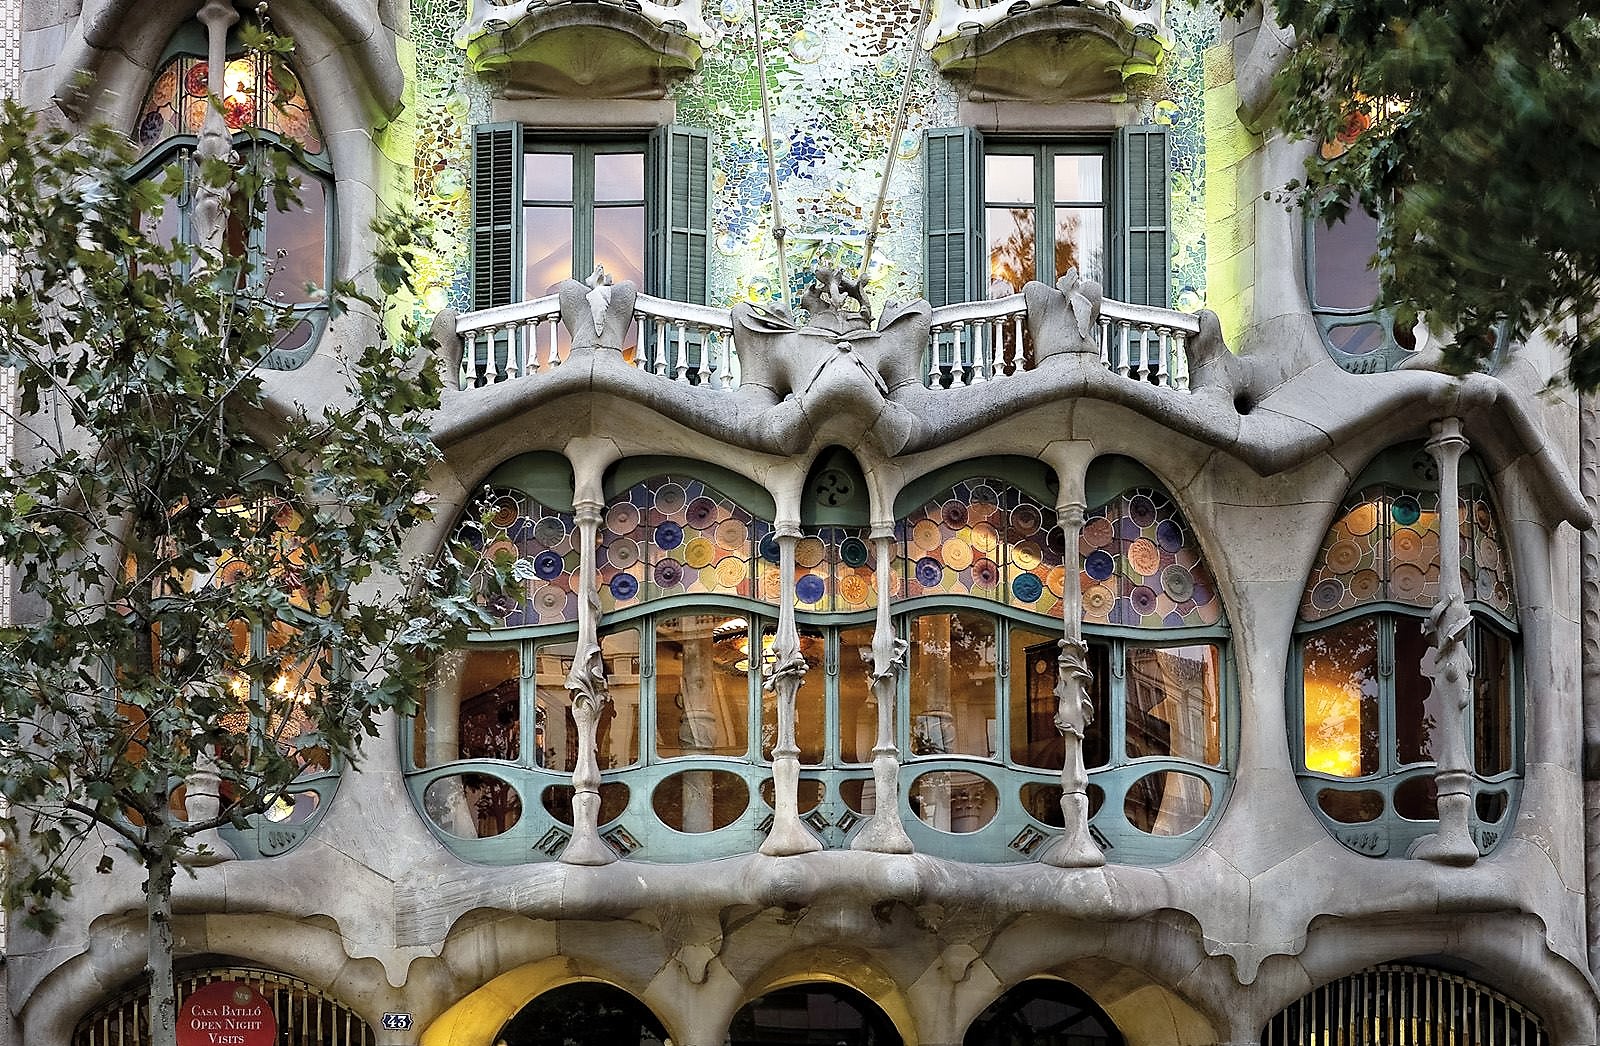 خانه جادوگرها در اسپانیا که با استخوان ساخته شده !!